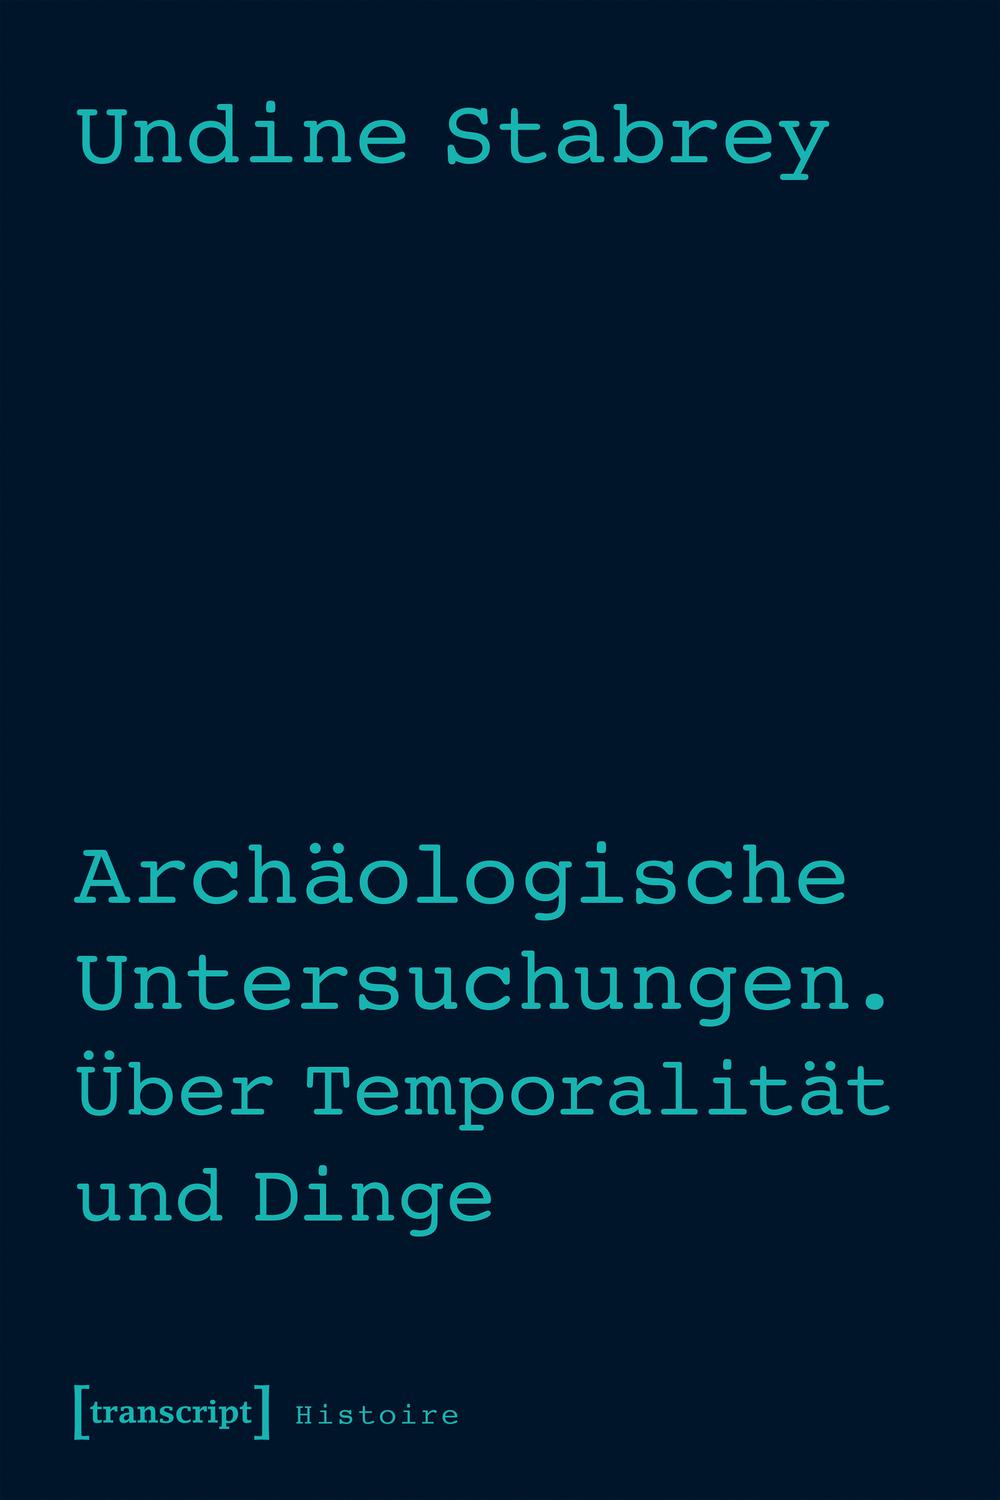 Archäologische Untersuchungen. Über Temporalität und Dinge - Undine Stabrey